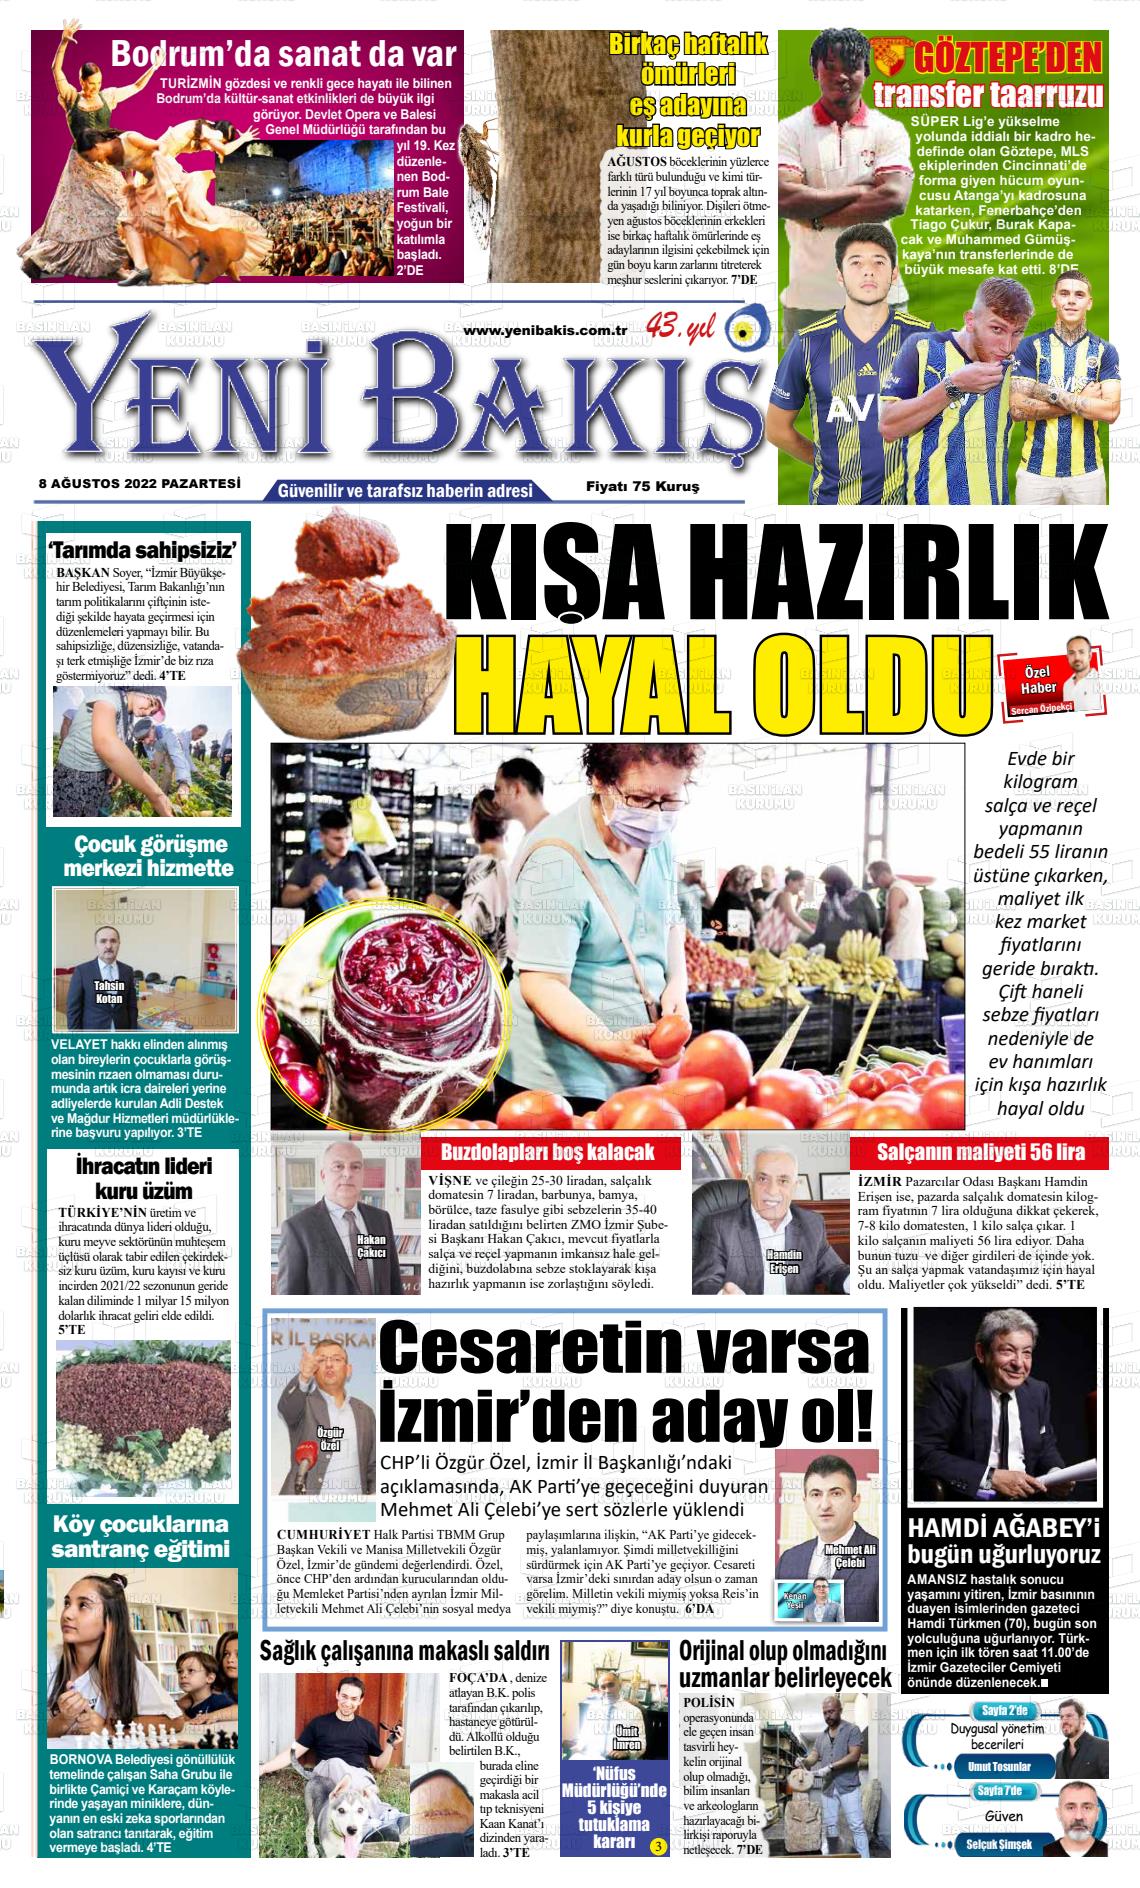 08 Ağustos 2022 Yeni Bakış Gazete Manşeti